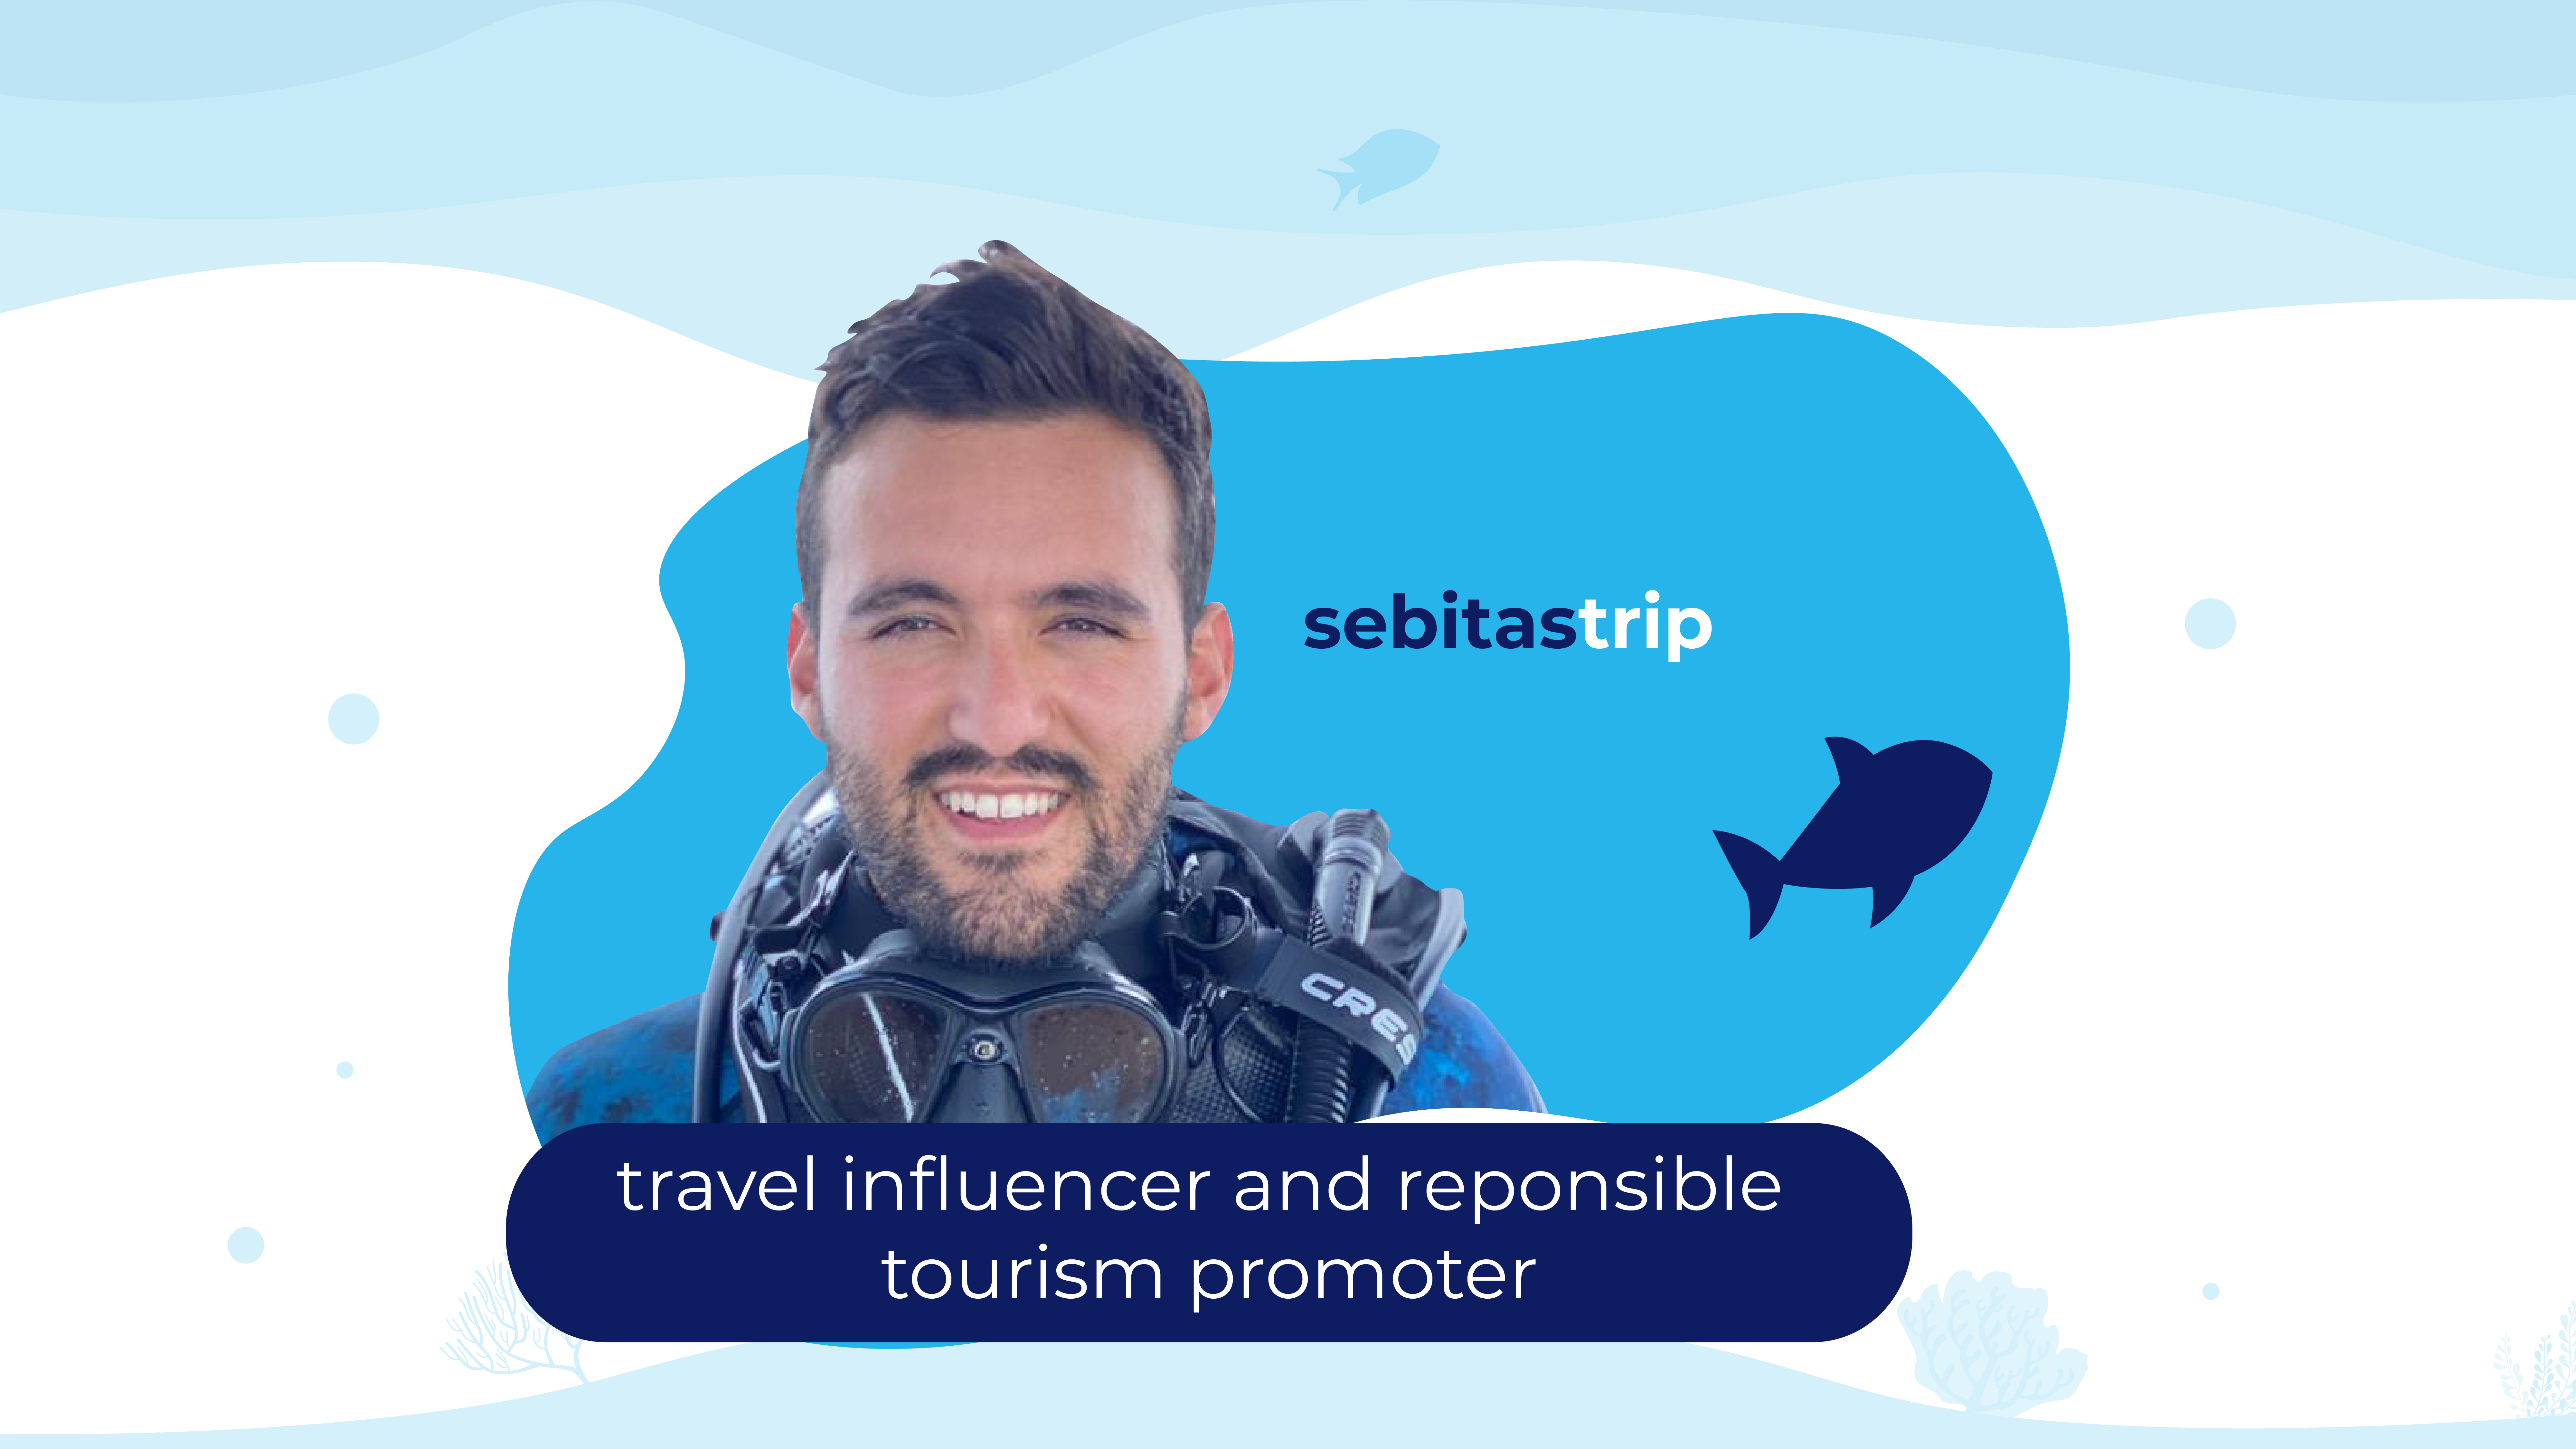 SebitasTrip é um famoso influenciador cujo canal no YouTube se concentra no turismo responsável